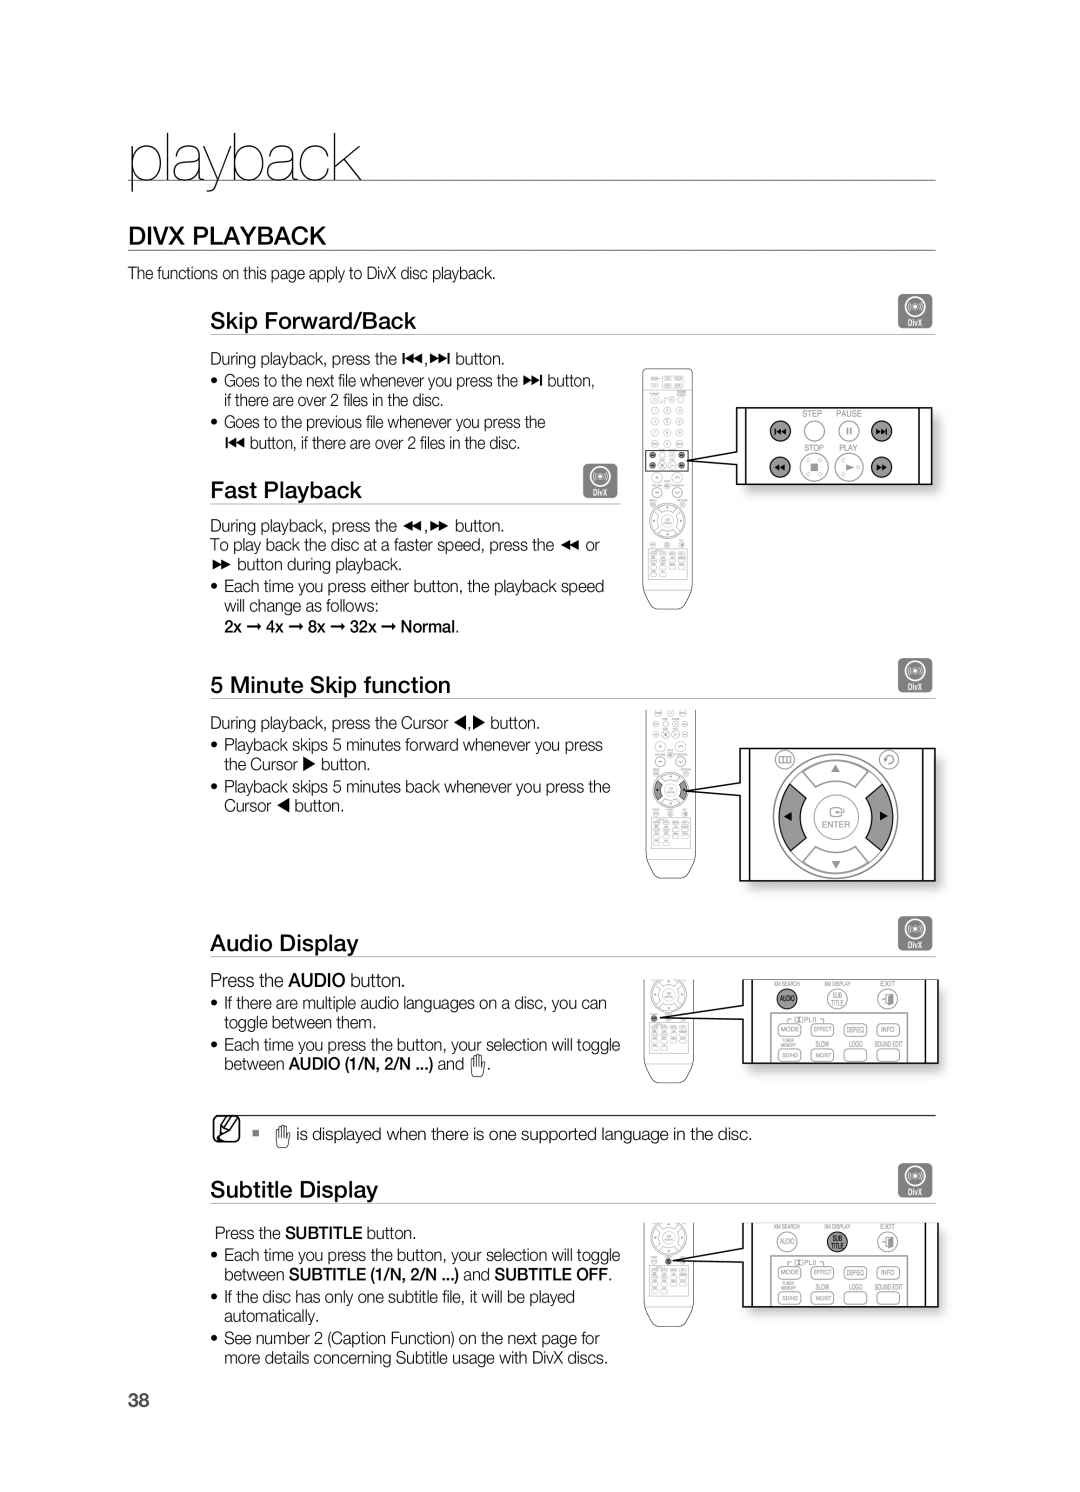 Samsung HT-Z510 manual Divx Playback, playback 